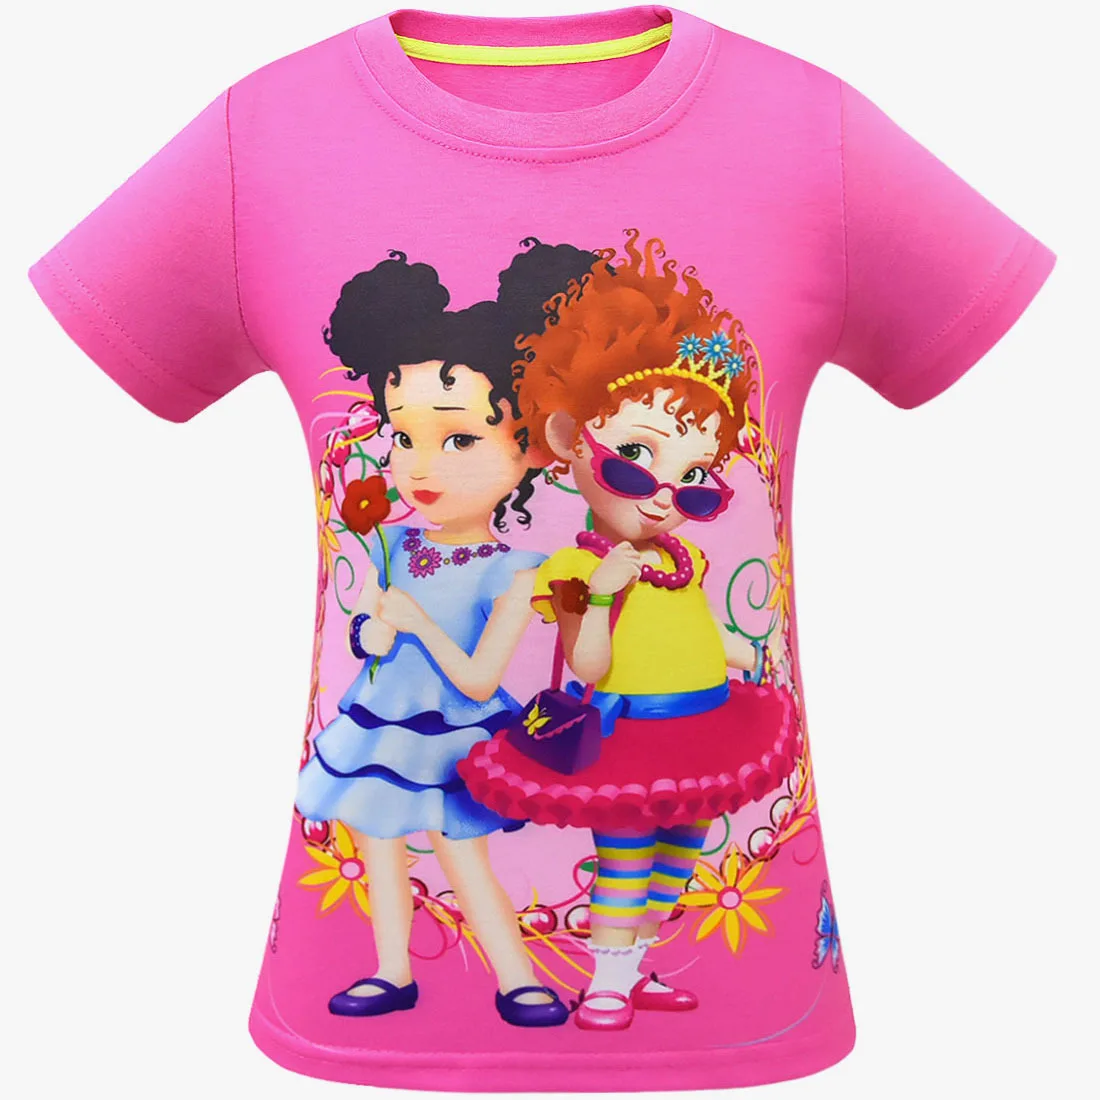 Новая модная летняя футболка Нэнси для маленьких девочек детская одежда «Моана» футболка для девочек Рождественская одежда с короткими рукавами футболки с рисунками